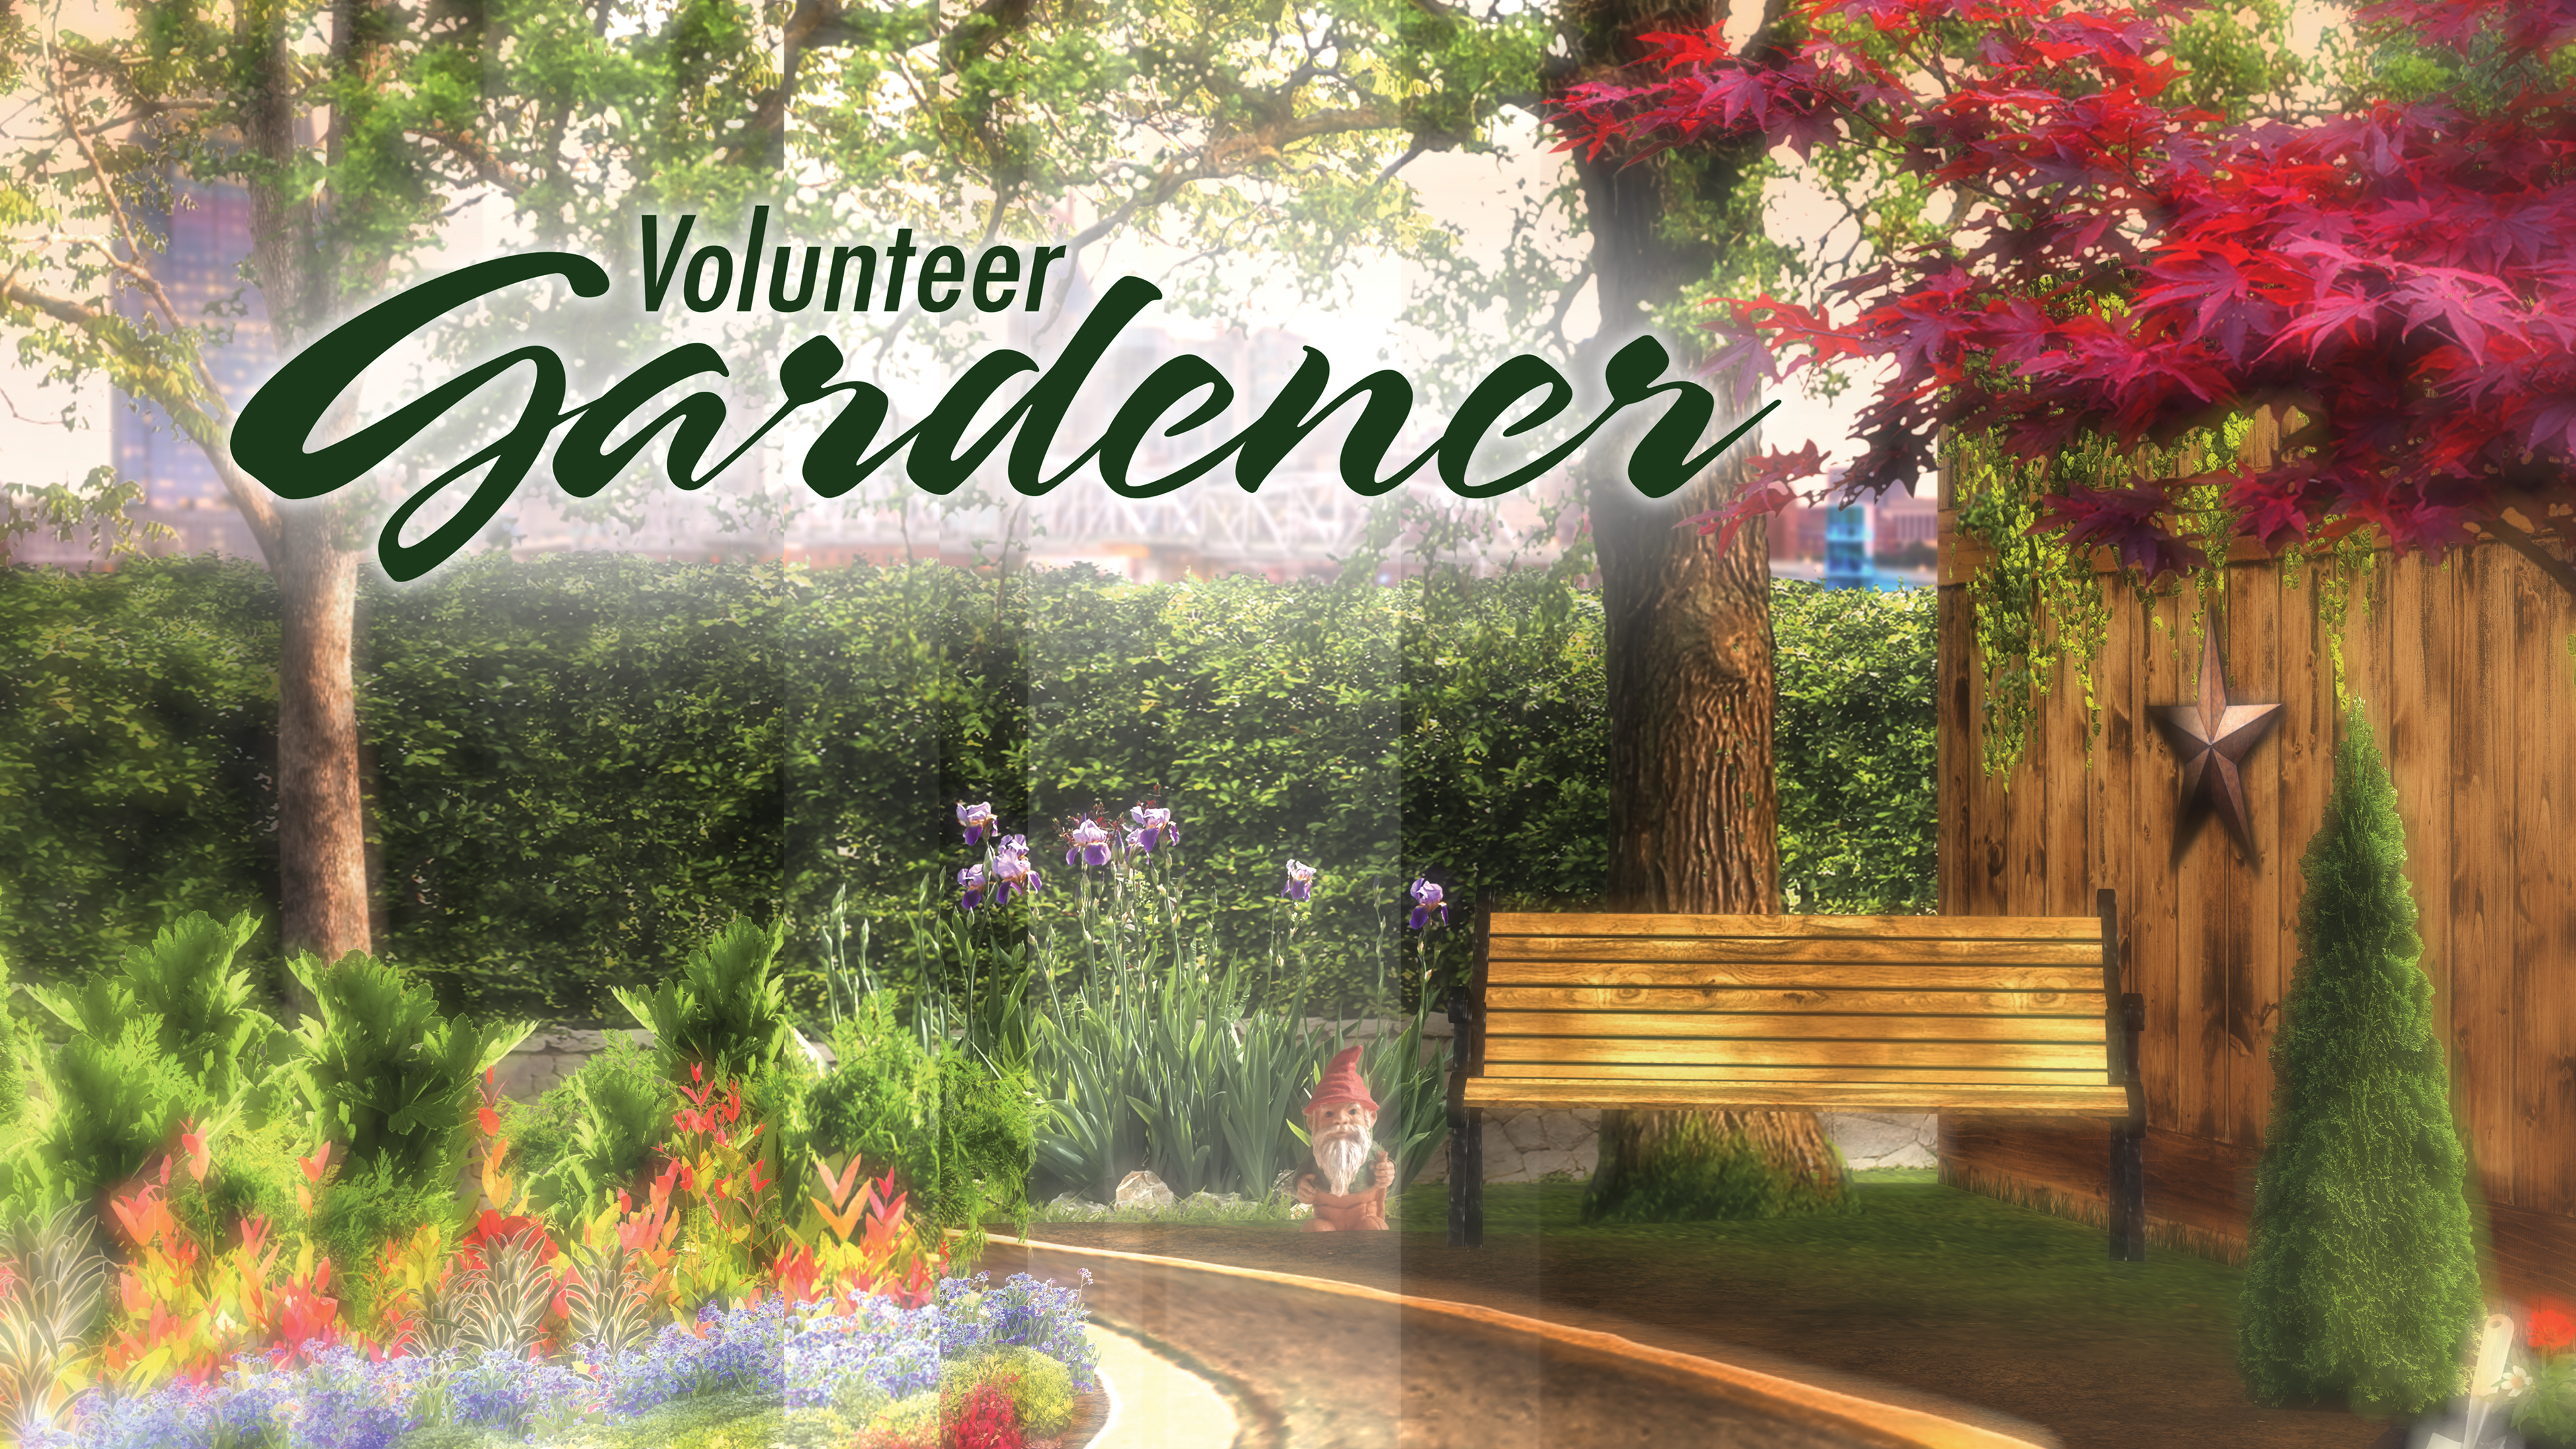 Volunteer Gardener show